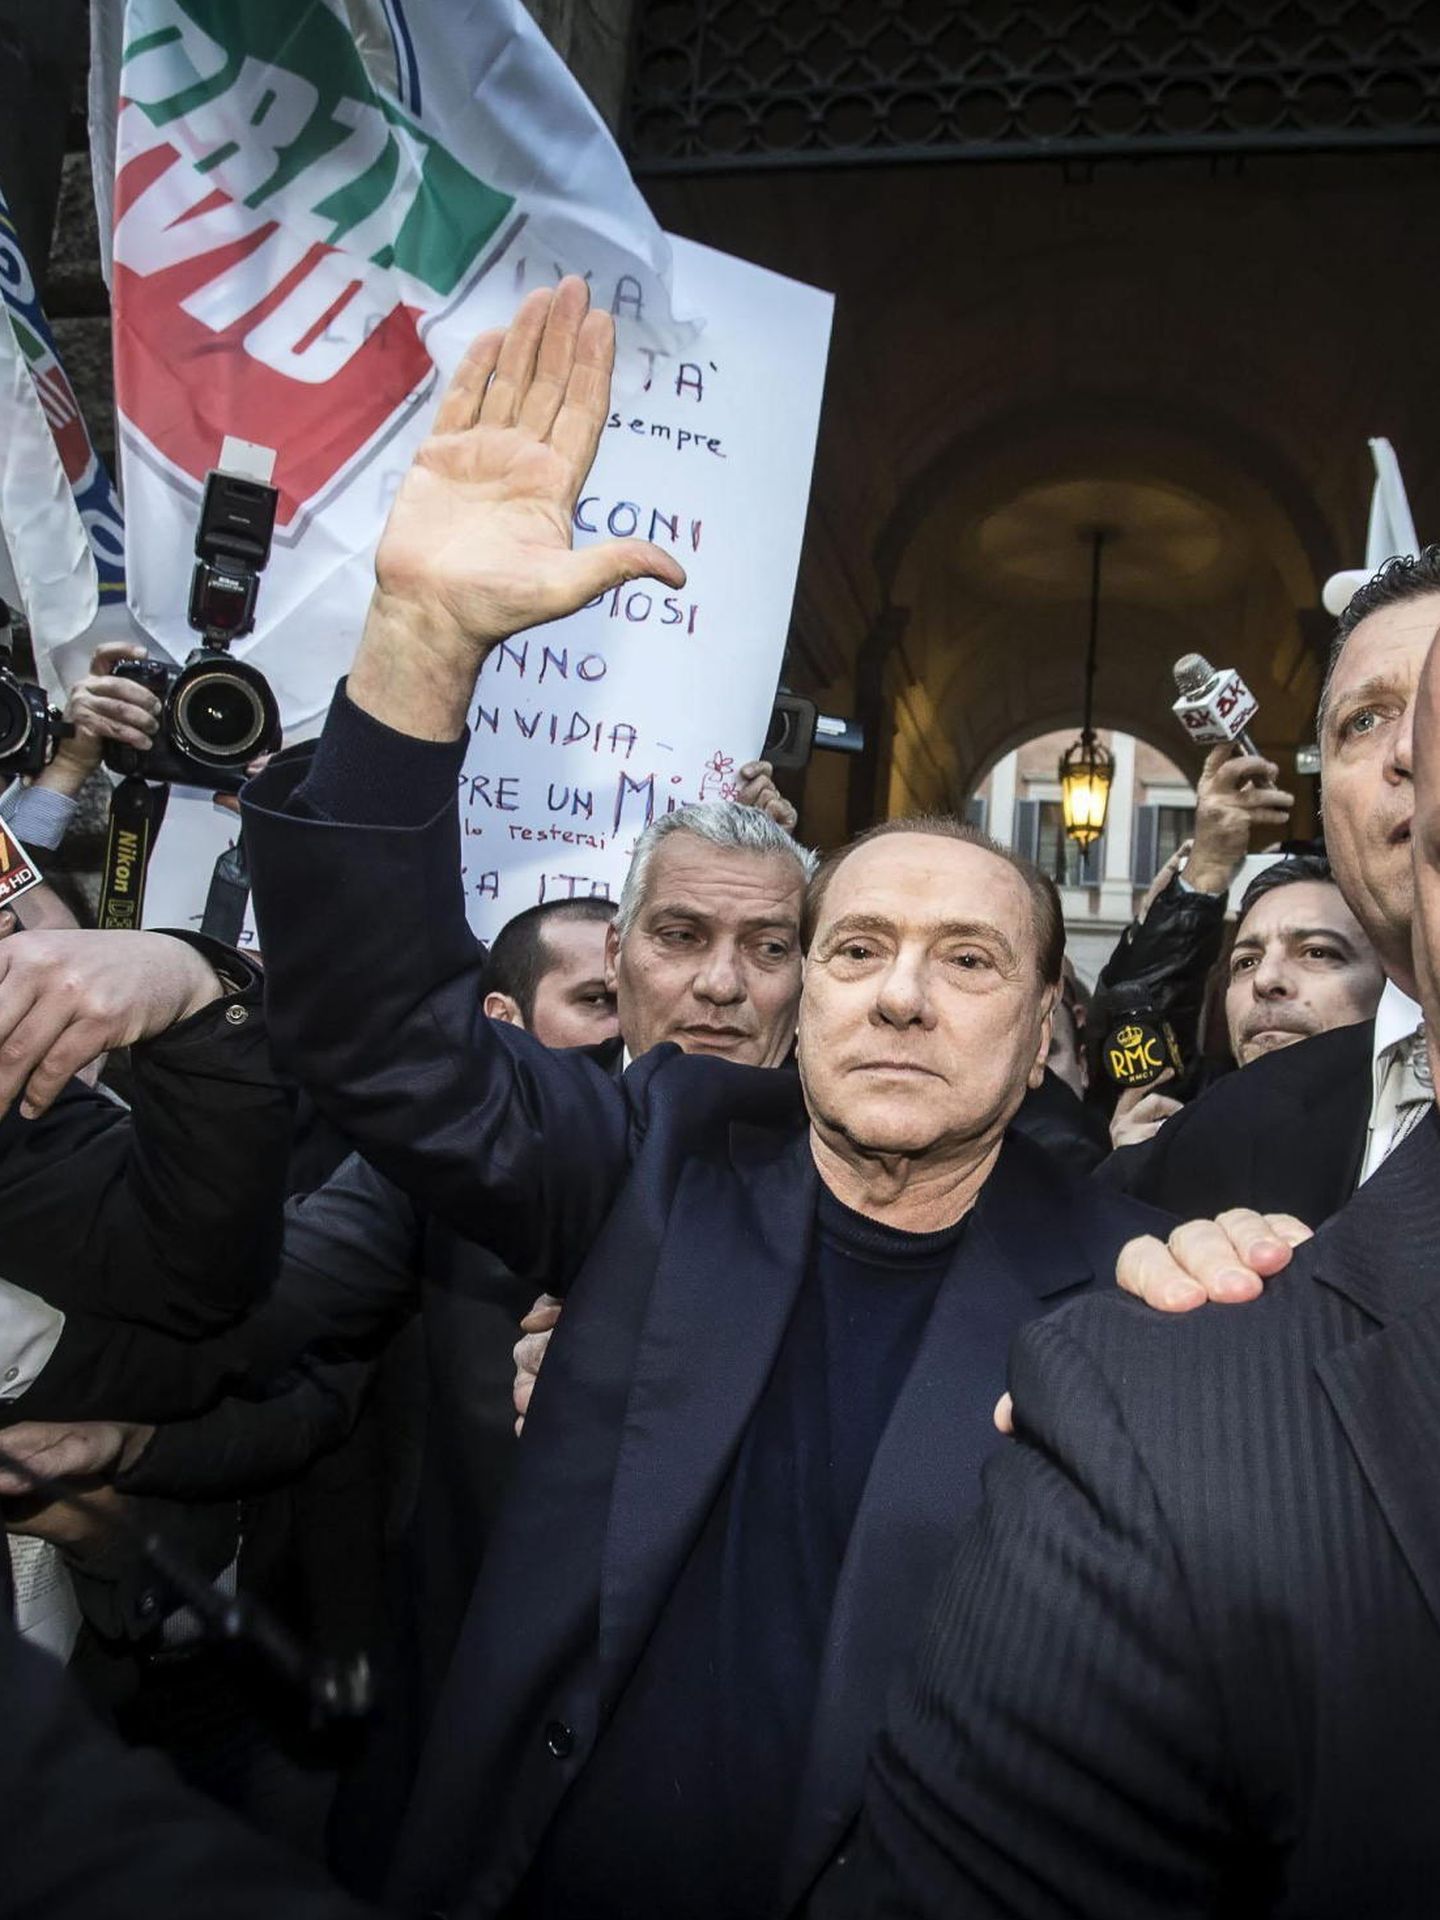 Silvio fue absuelto de su participación en una caso de incitación a la prostitución de menores por el que, en un primer momento, fue condenado a siete años de prisión. (EFE/Angelo Carconi)